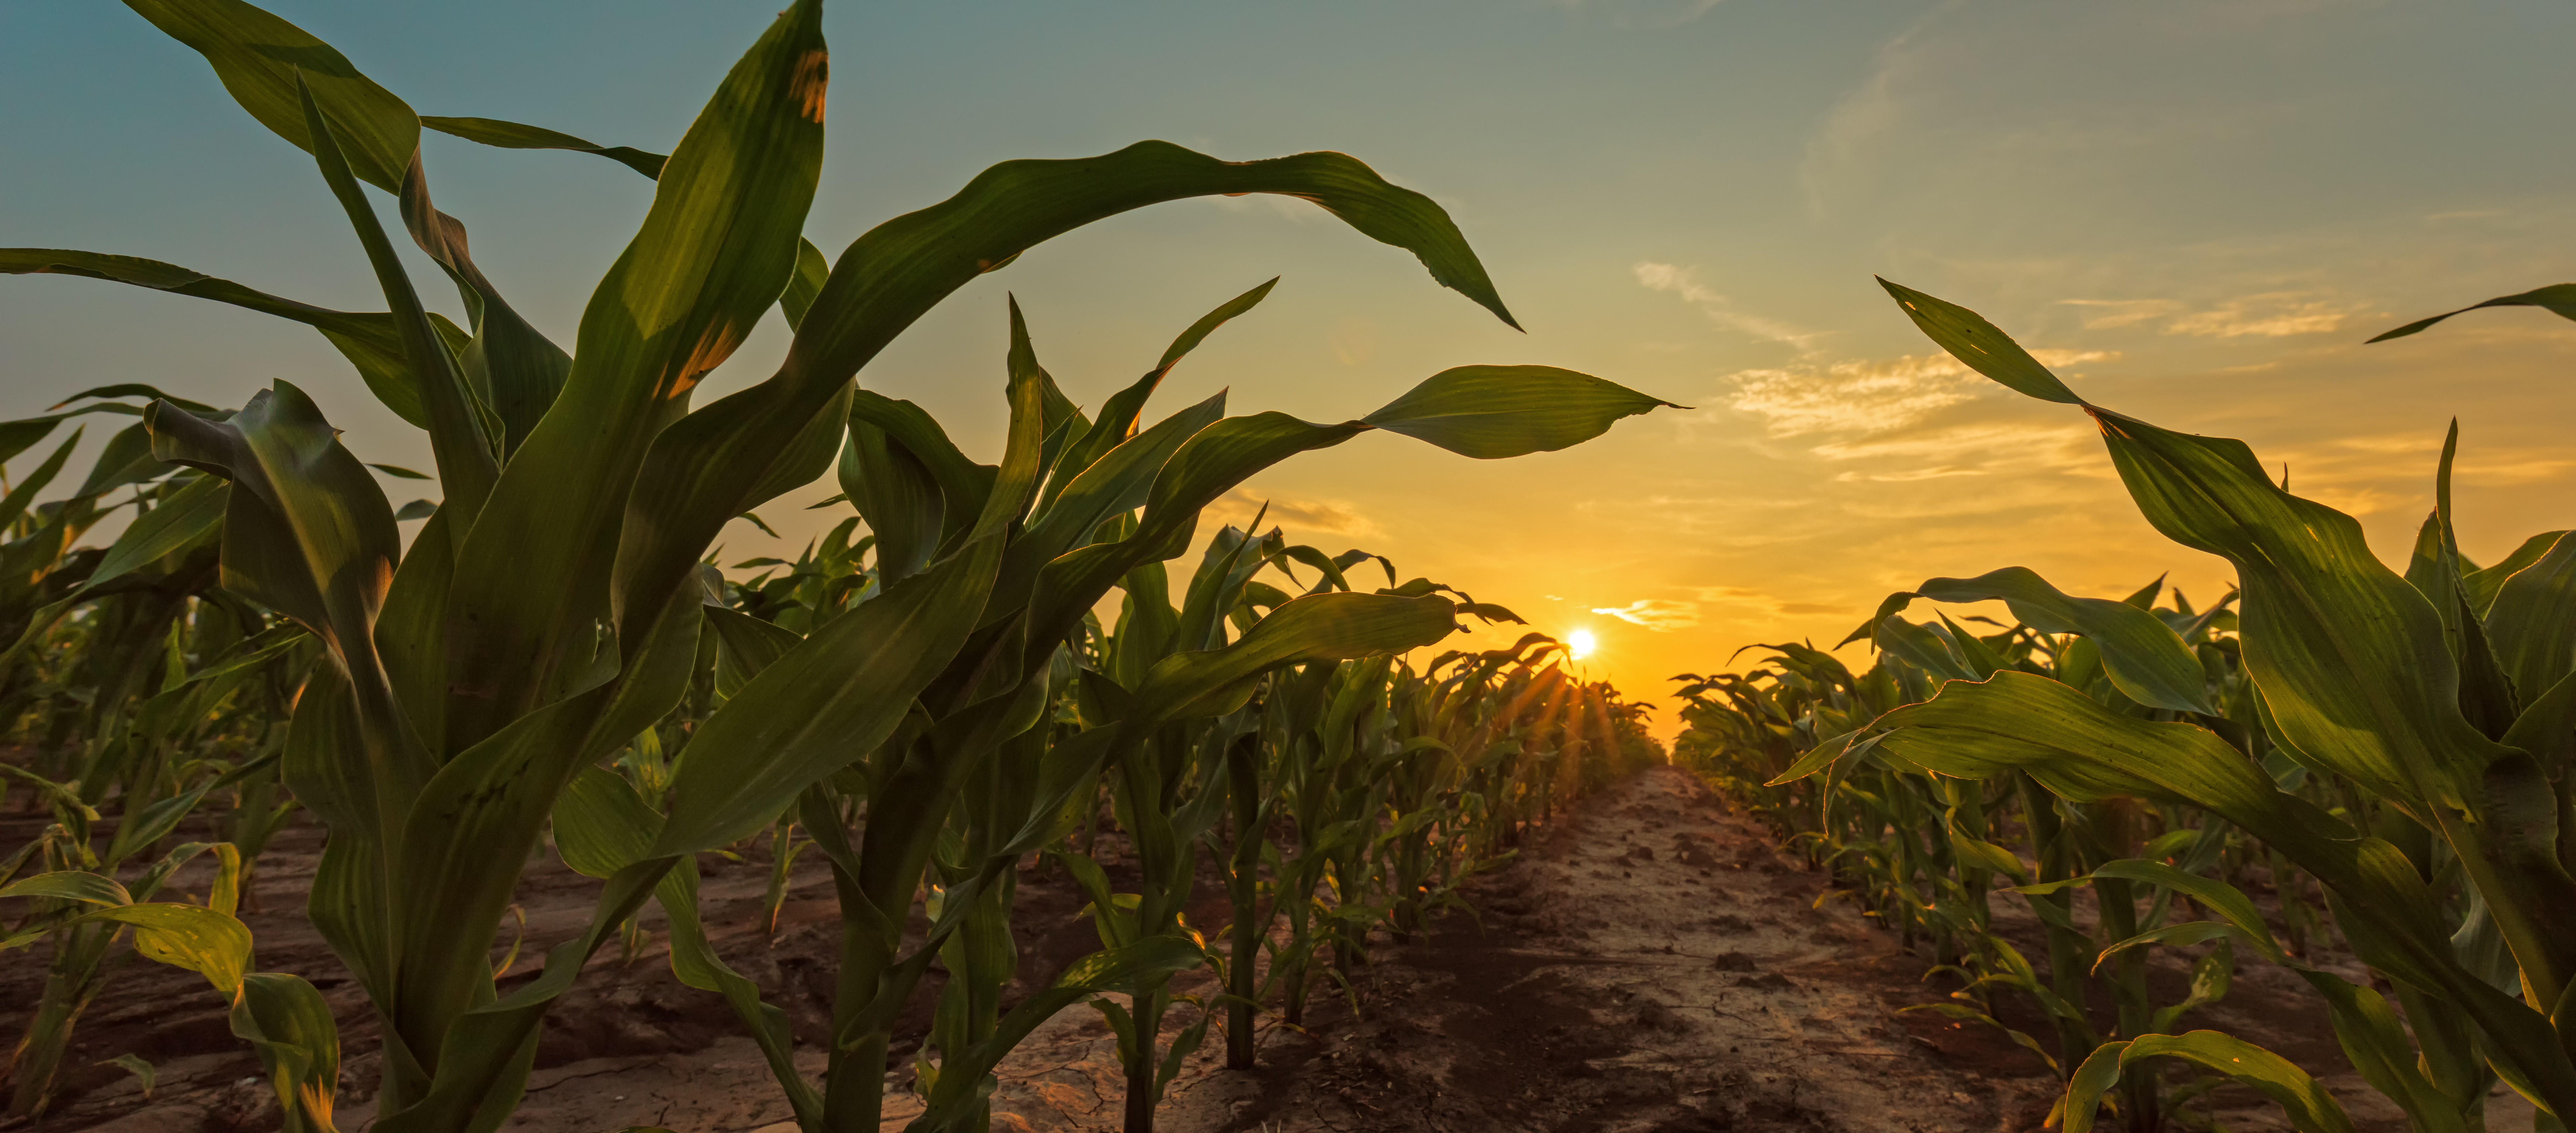 KWS-corn-field-sun-set.jpeg